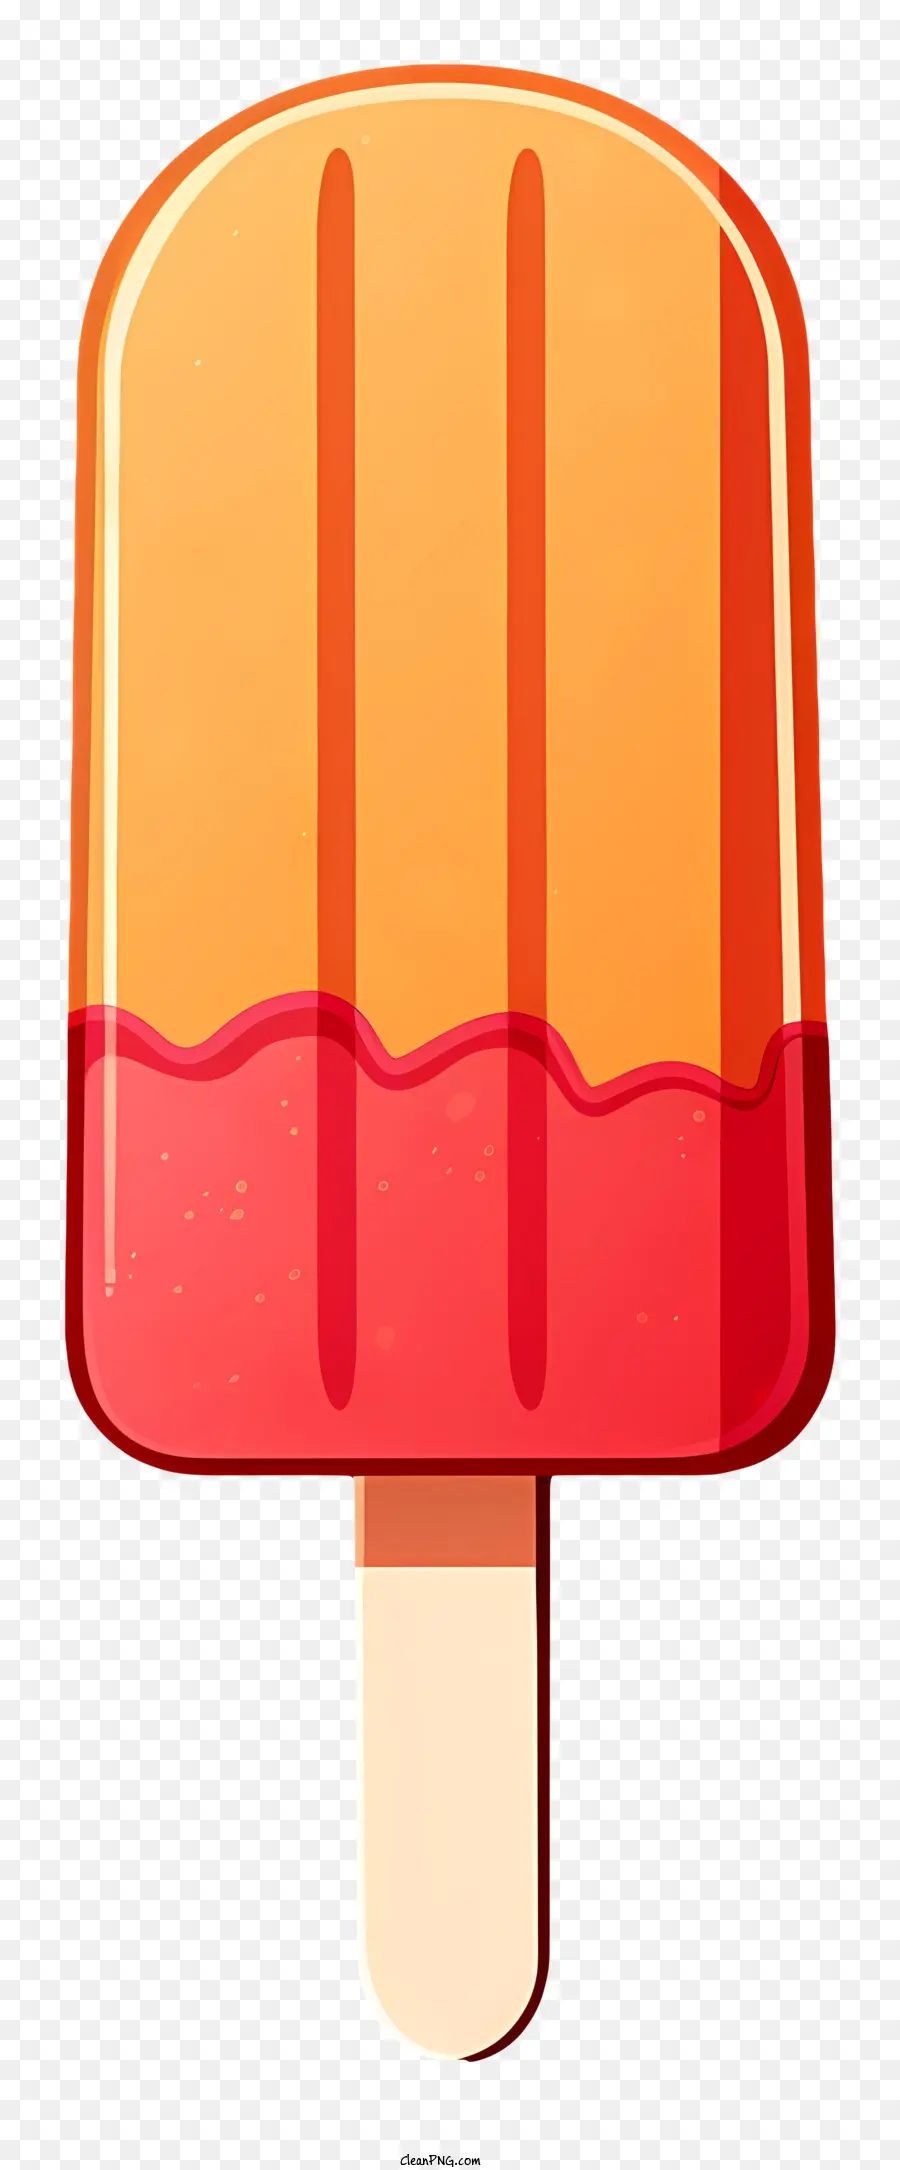 gelato al ghiacciolo rosa del ghiacciolo arancione di ghiaccioli su una consistenza del gelato a bastone - Gigante colorato sul bastone con involucro di plastica